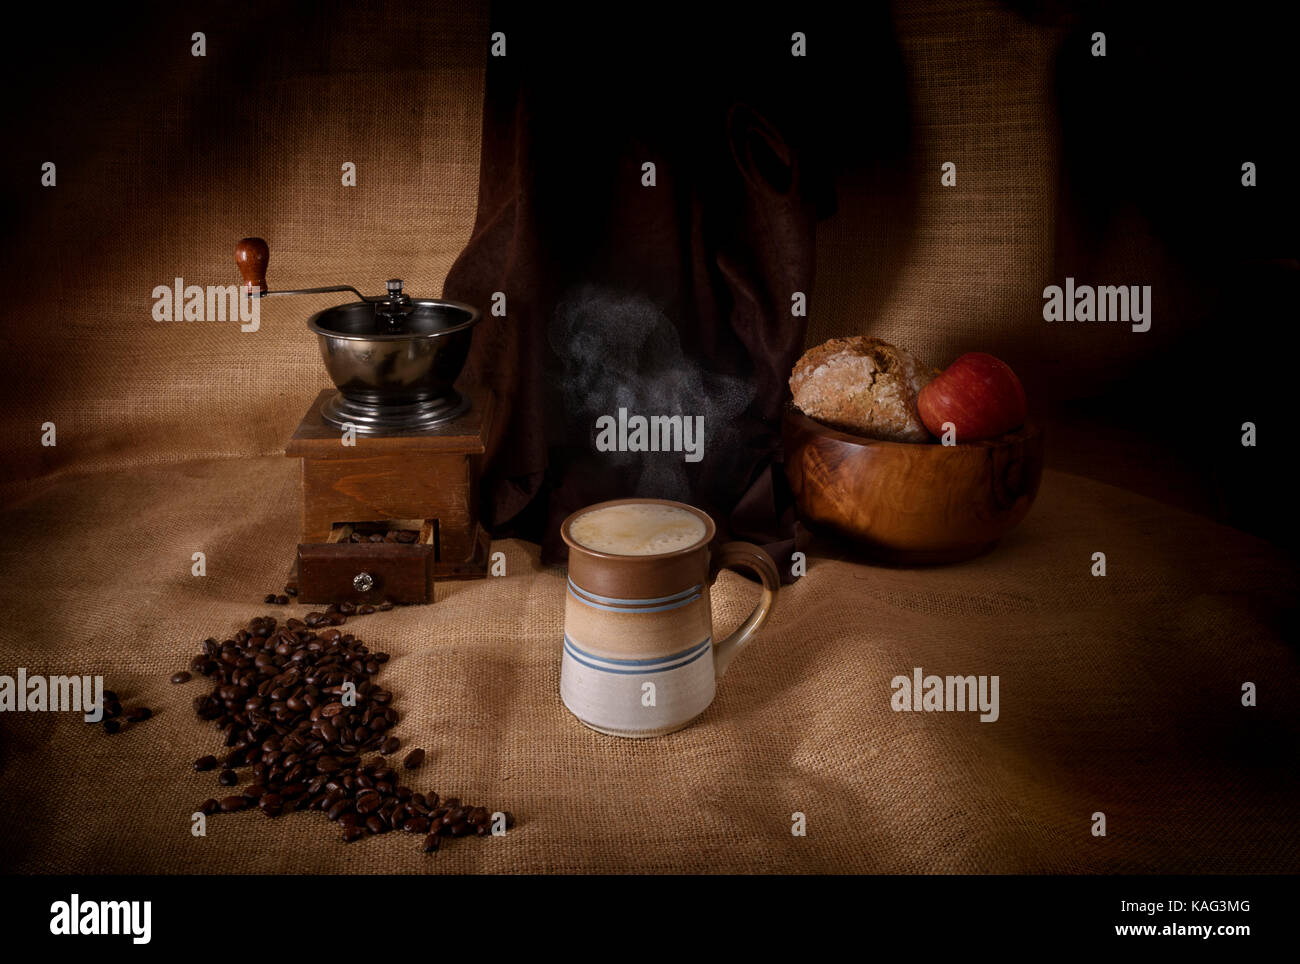 Dampfend heißes Getränk Kaffee in eine Tasse neben Kaffeemühle und Kaffeebohnen Stockfoto